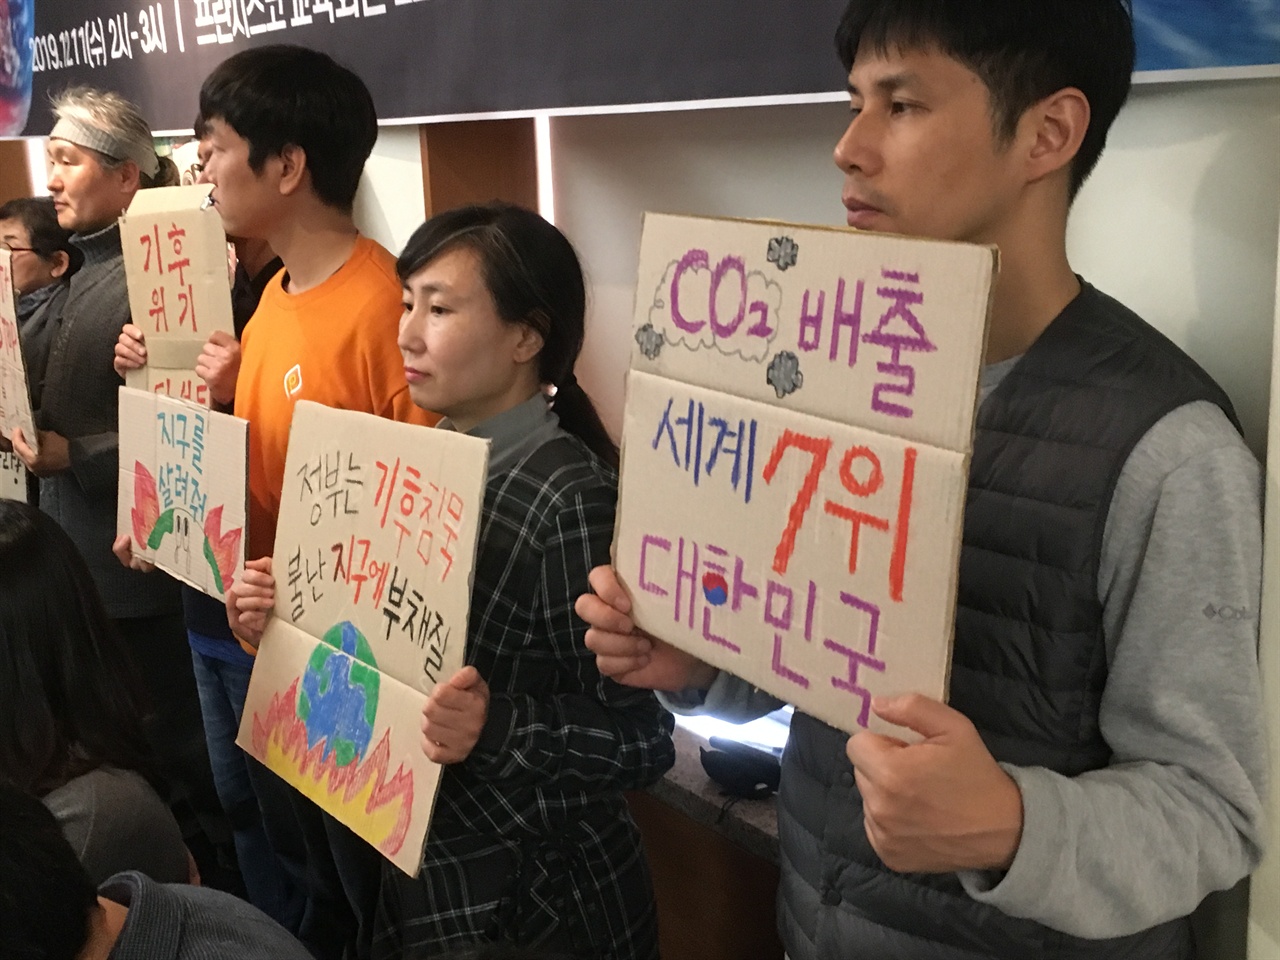 기후위기 비상행동에 참석한 환경단체 회원이 세계 탄소배출량 7위를 기록한 정부를 비판하는 피켓을 들고 있다.